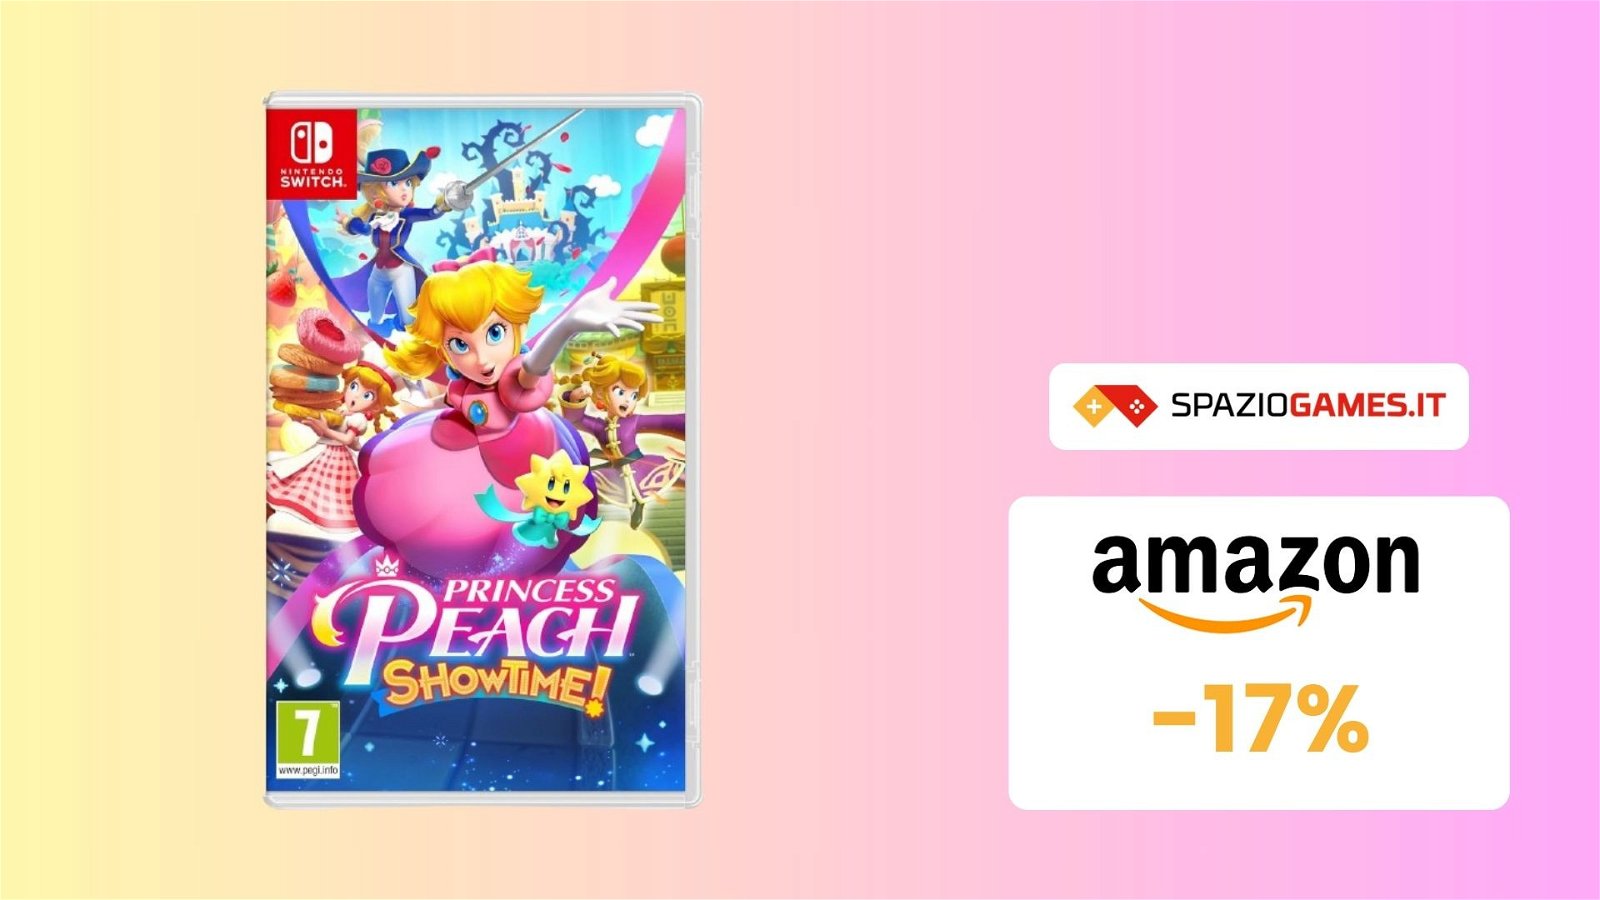 Divertiti con Princess Peach: Showtime! Ora a MENO di 50€ su Amazon!